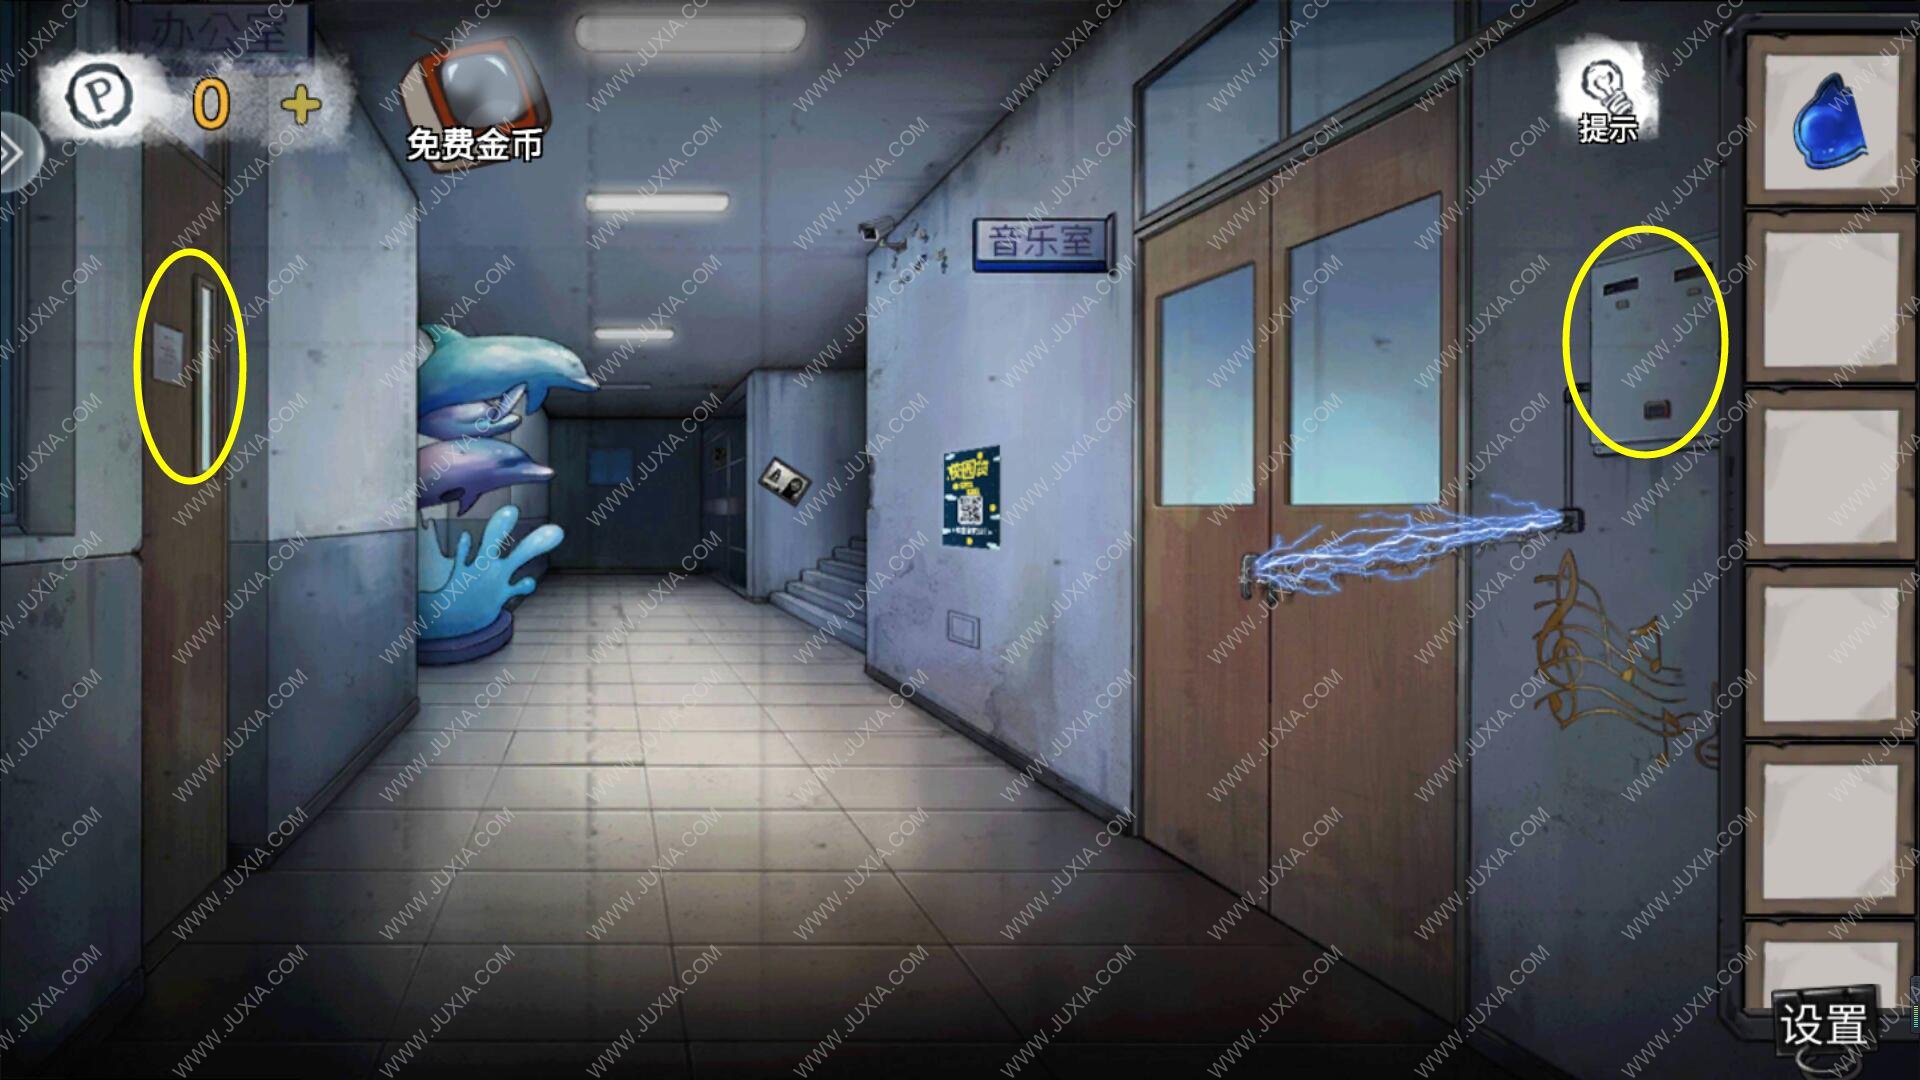 無人醫院張菀檸攻略醫務室開燈小遊戲 無人醫院第六章走廊字畫盒子密碼